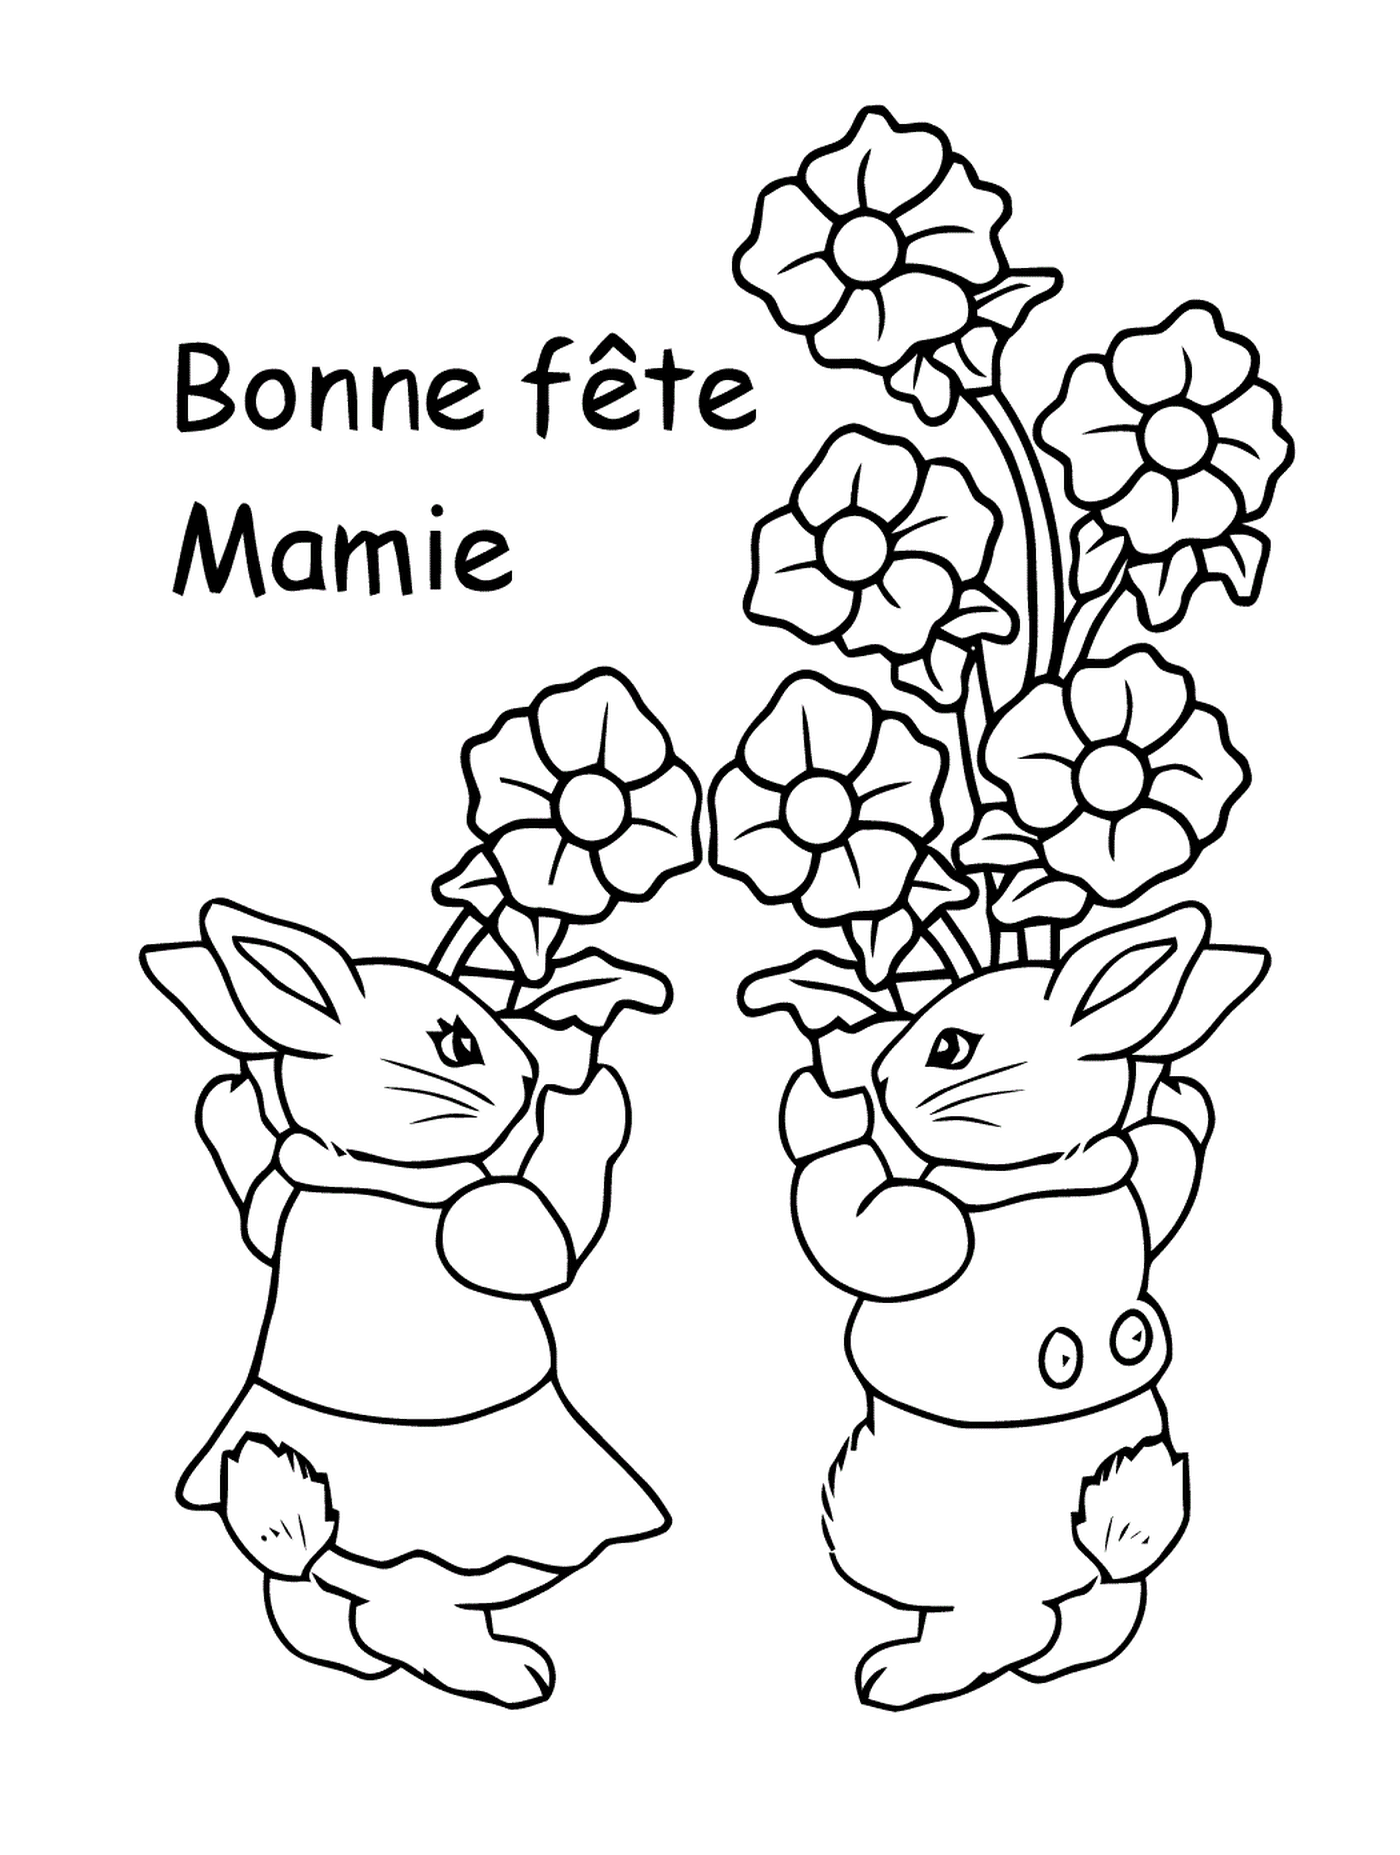   Deux lapins tenant un bouquet de fleurs 